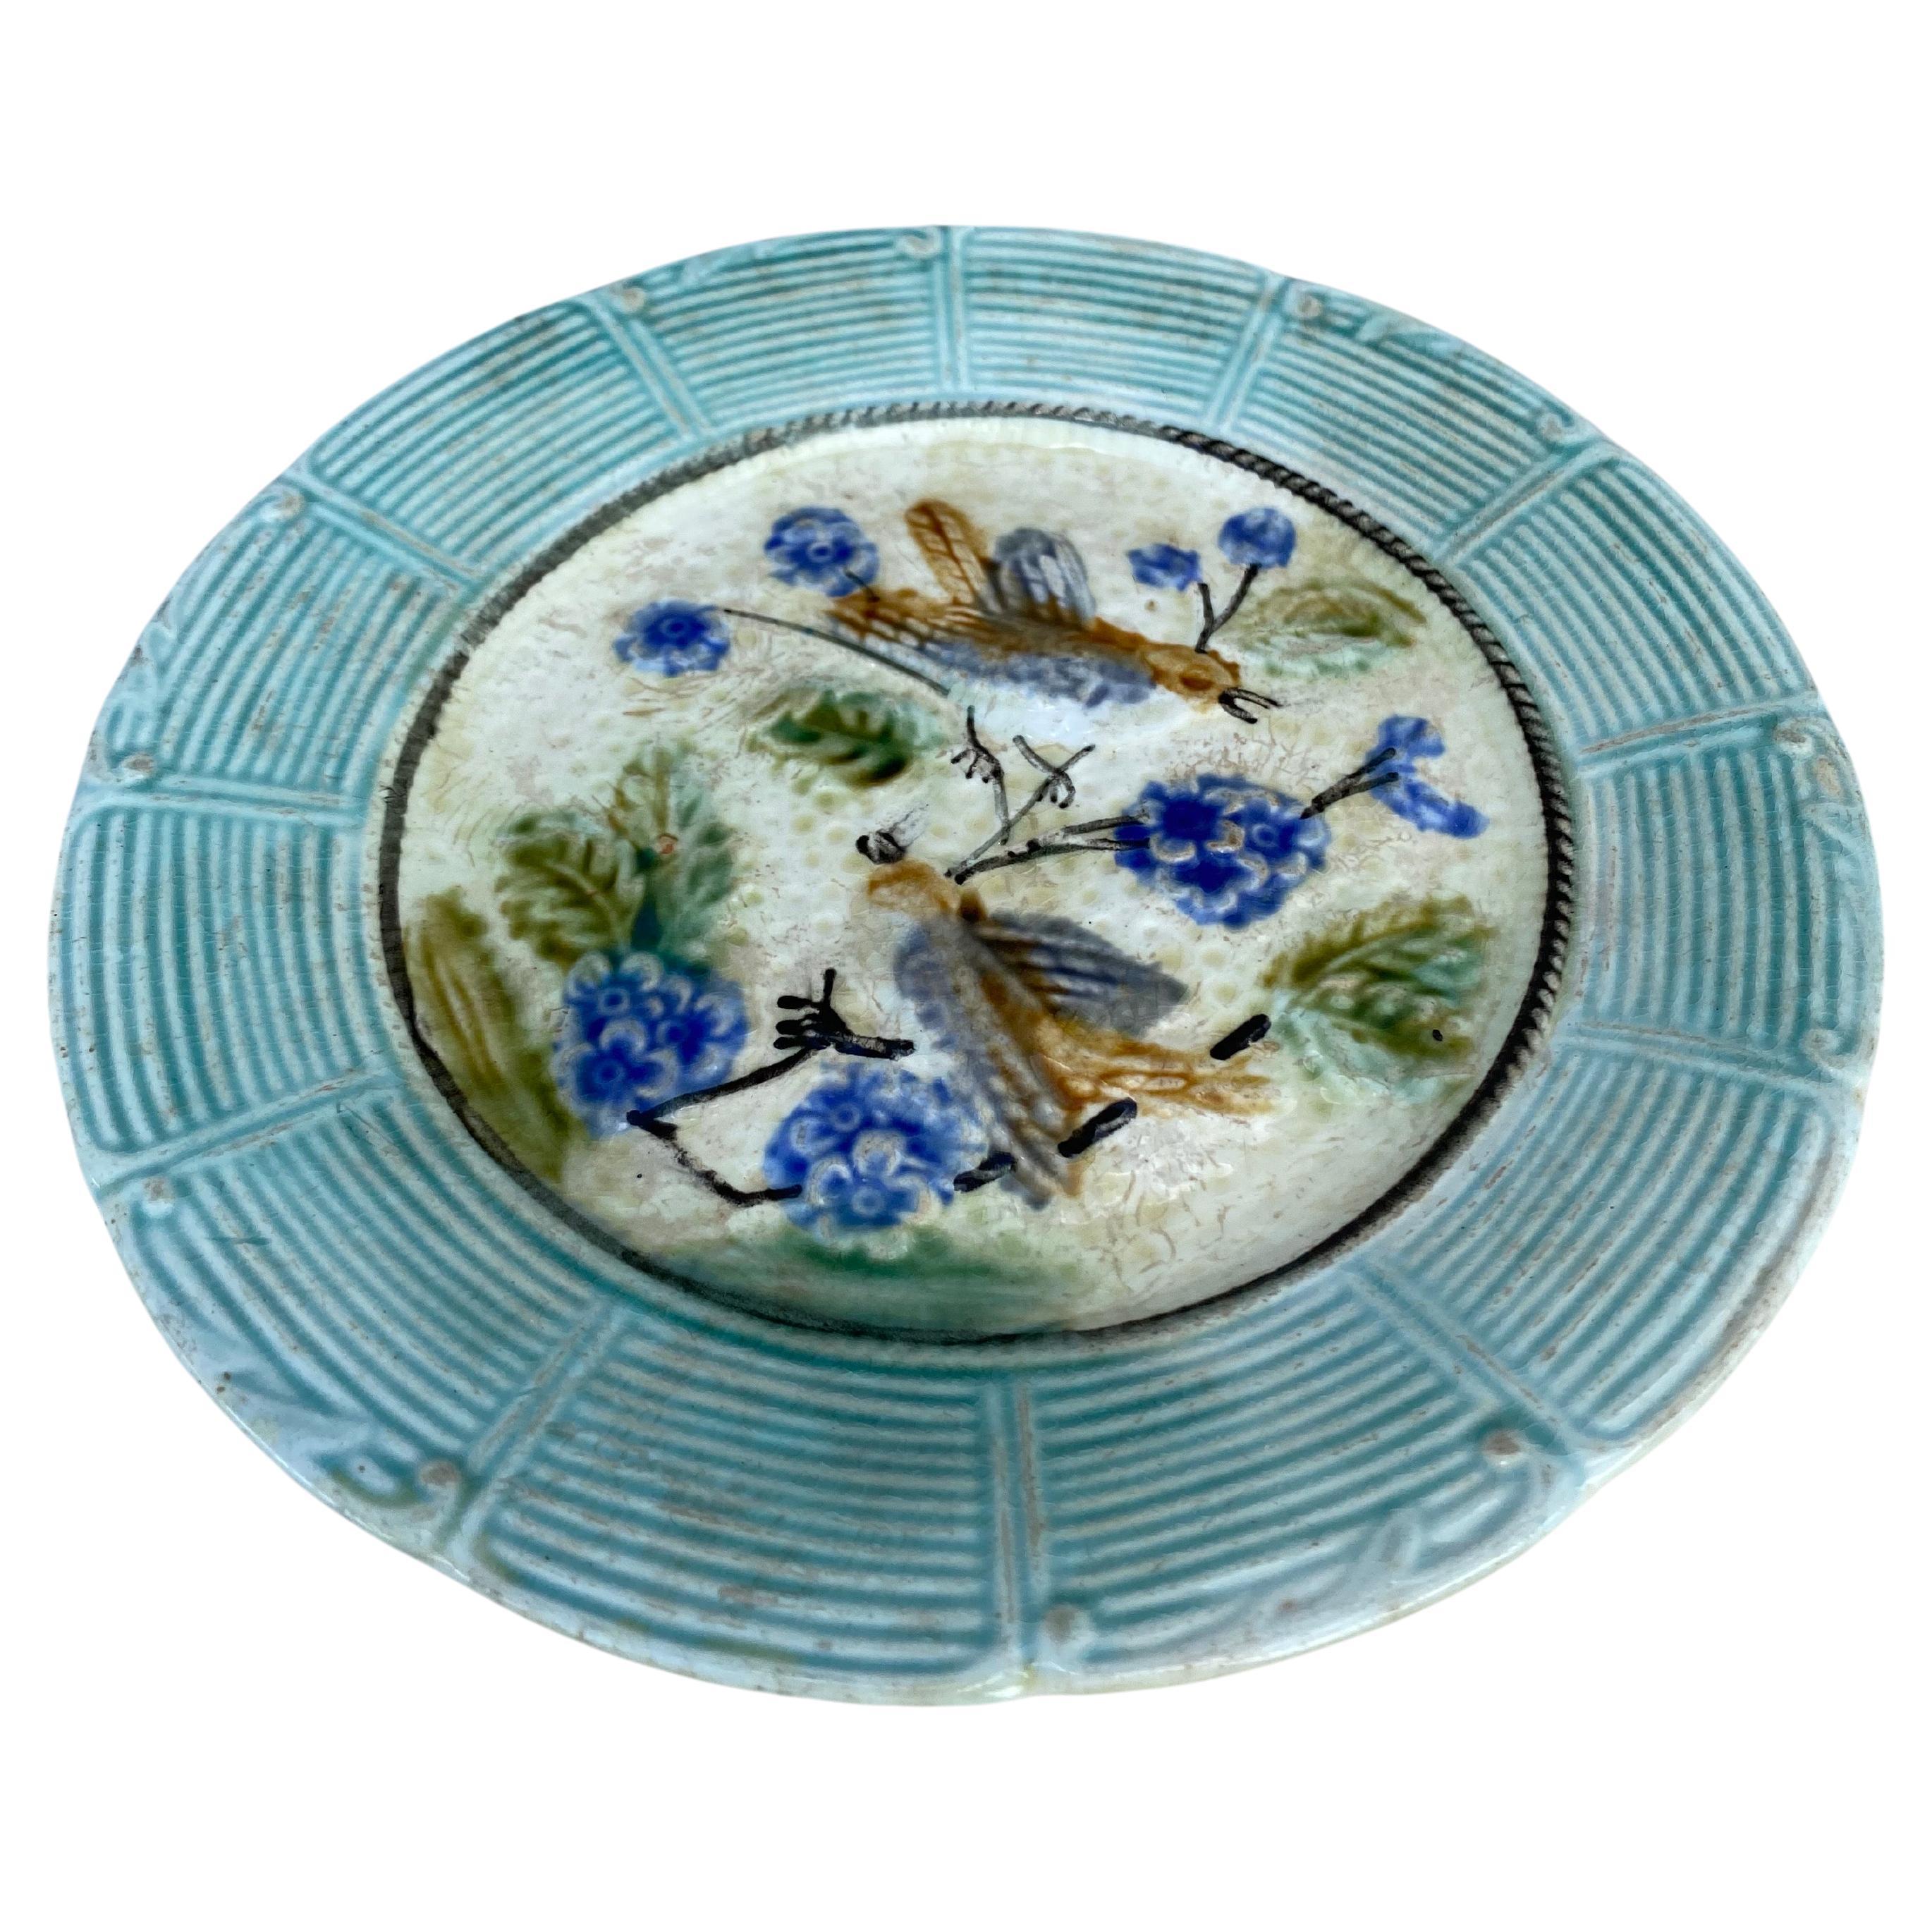 Assiette en majolique oiseaux avec fleurs bleues Onnaing, vers 1890.